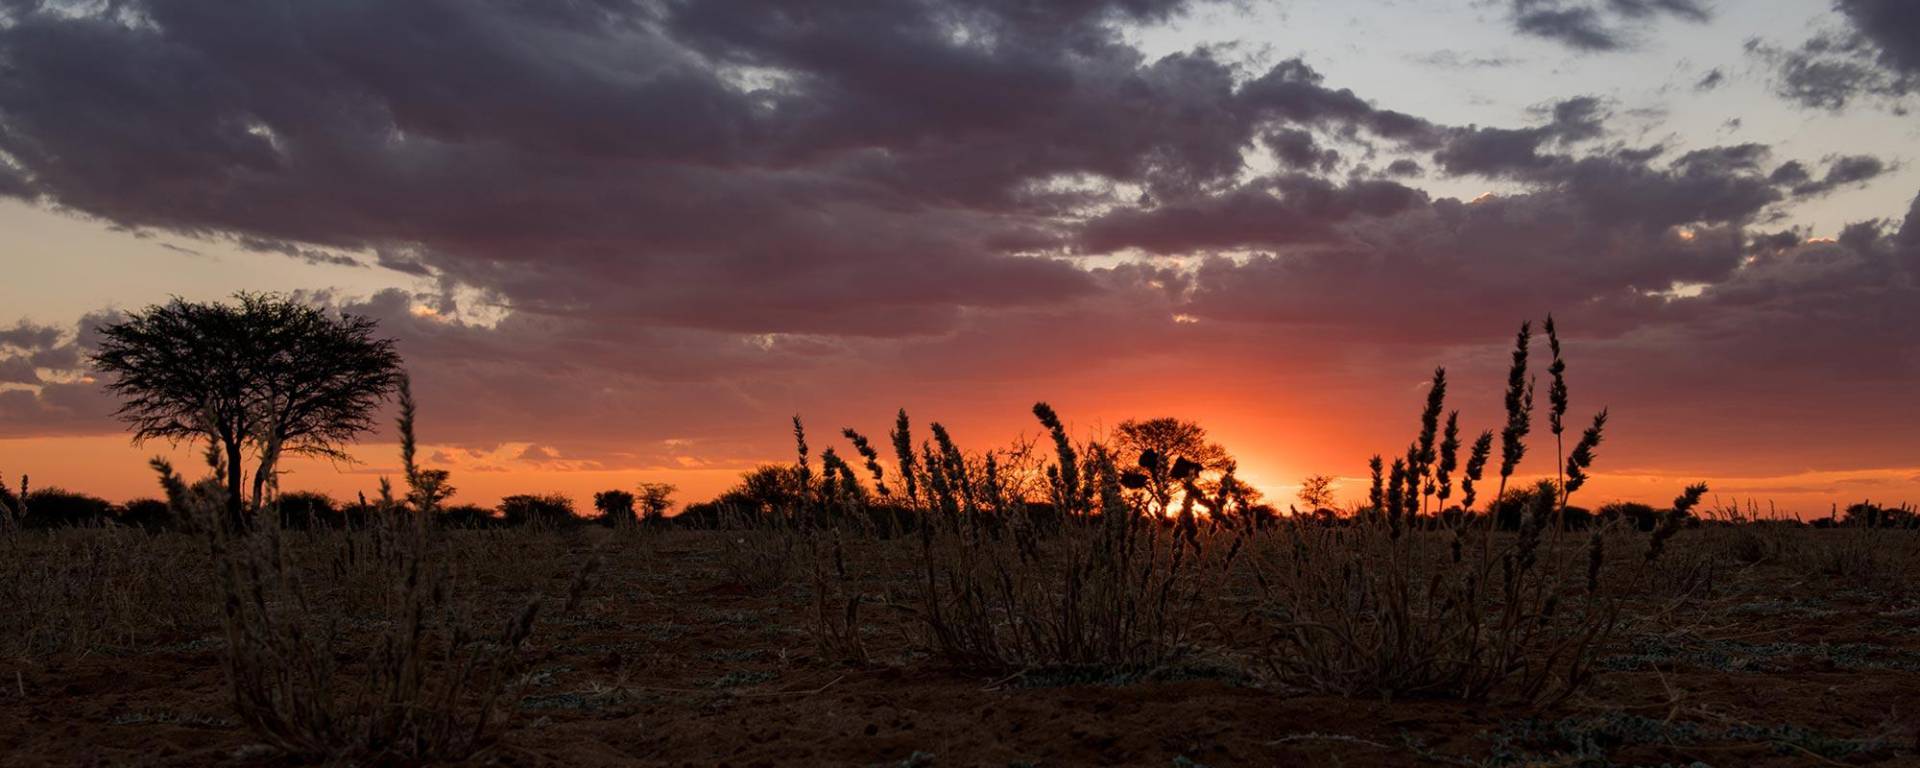 Sonnenuntergang - Immer eine besondere Stimmung in Afrika